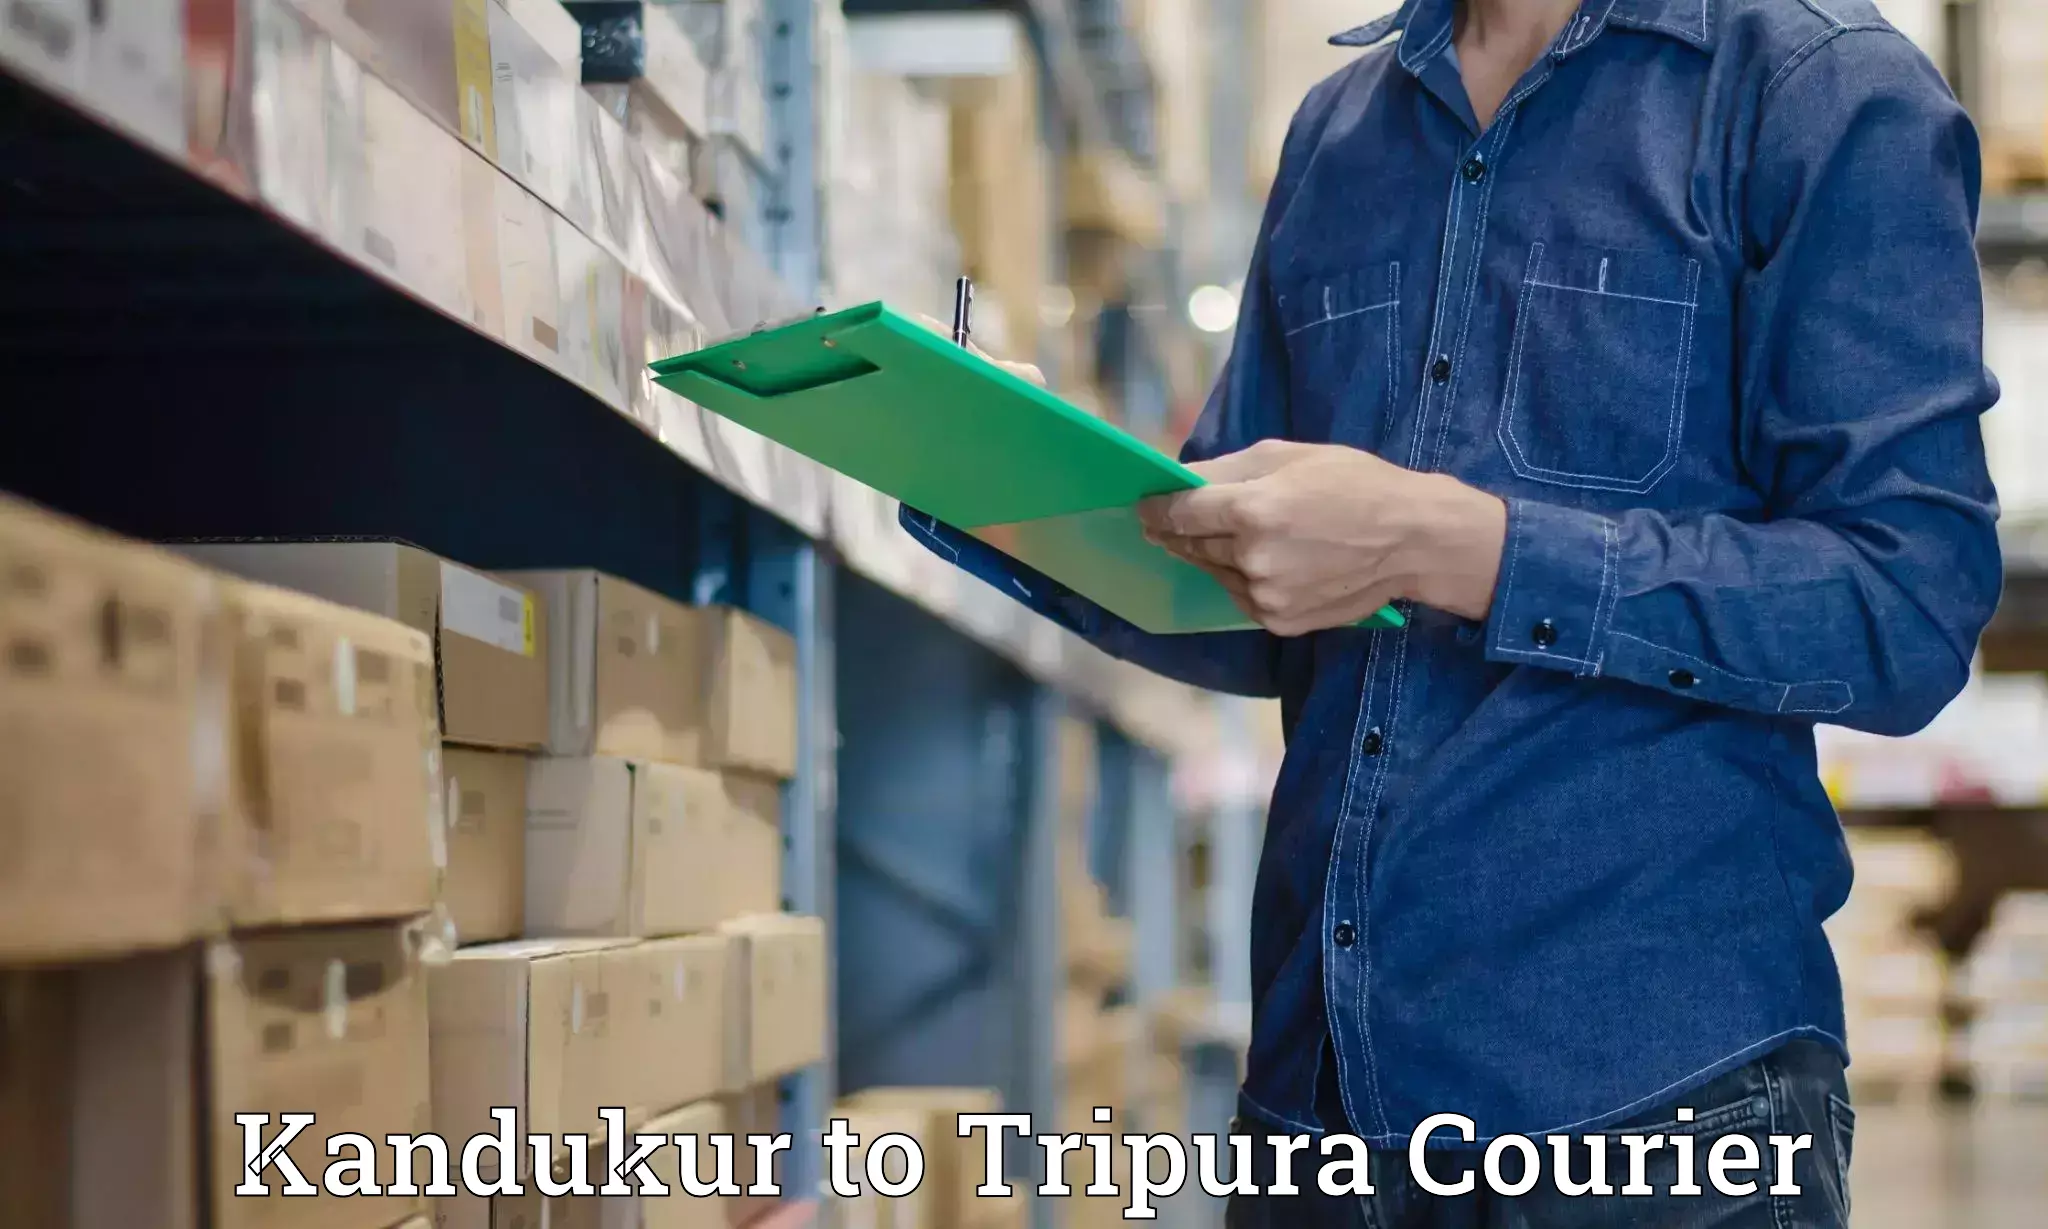 Expedited shipping methods Kandukur to Tripura